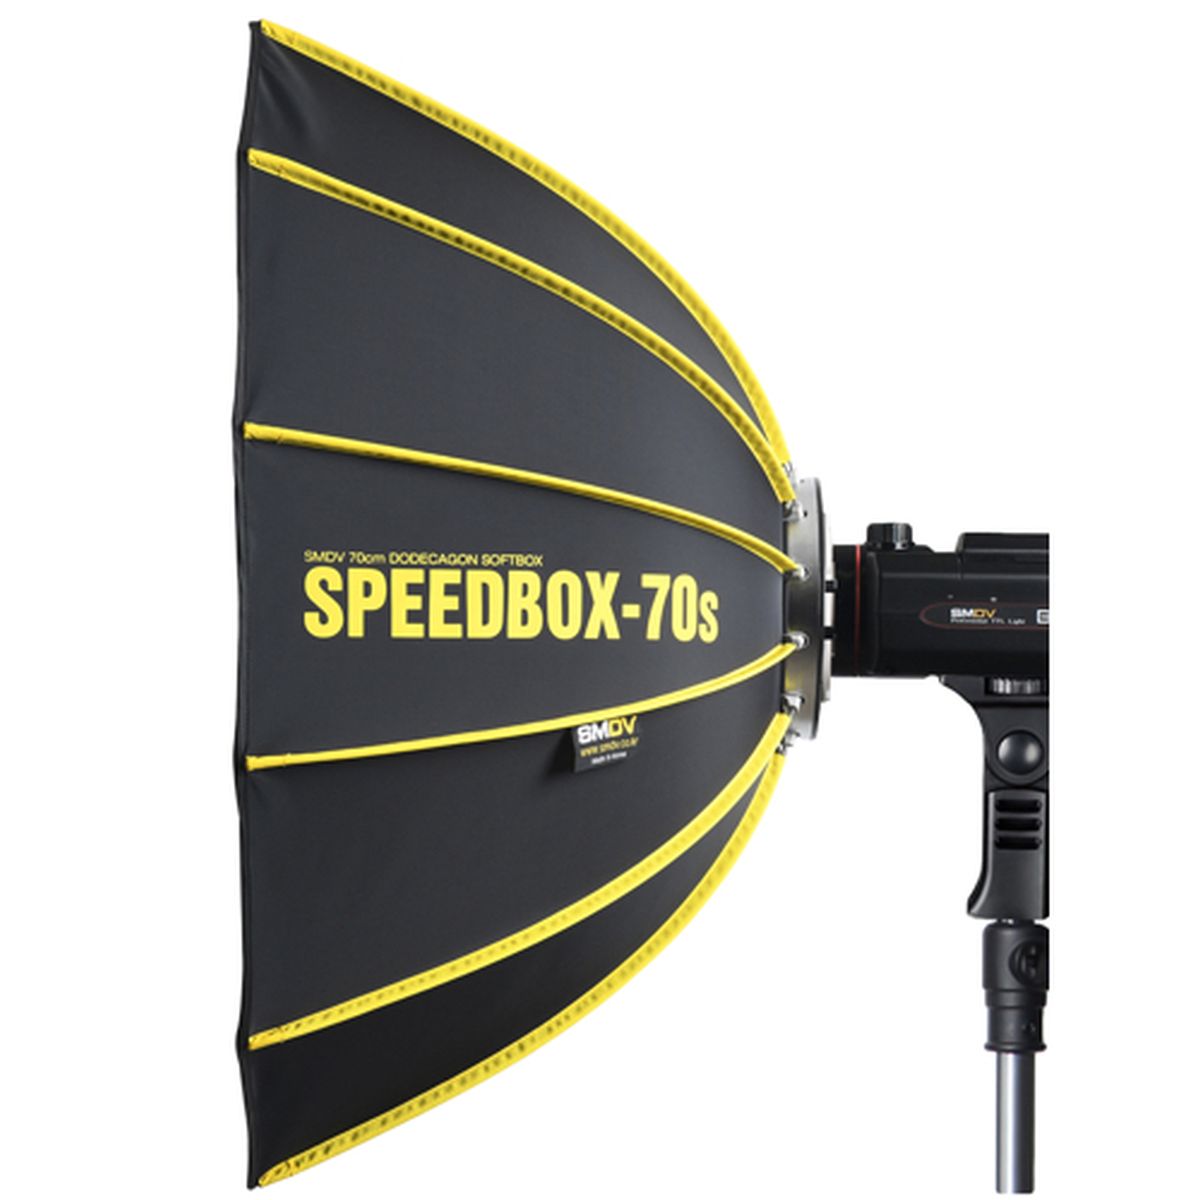 SMDV Speedbox-70S Blitzlicht für BRiHT 360 (DA-05)